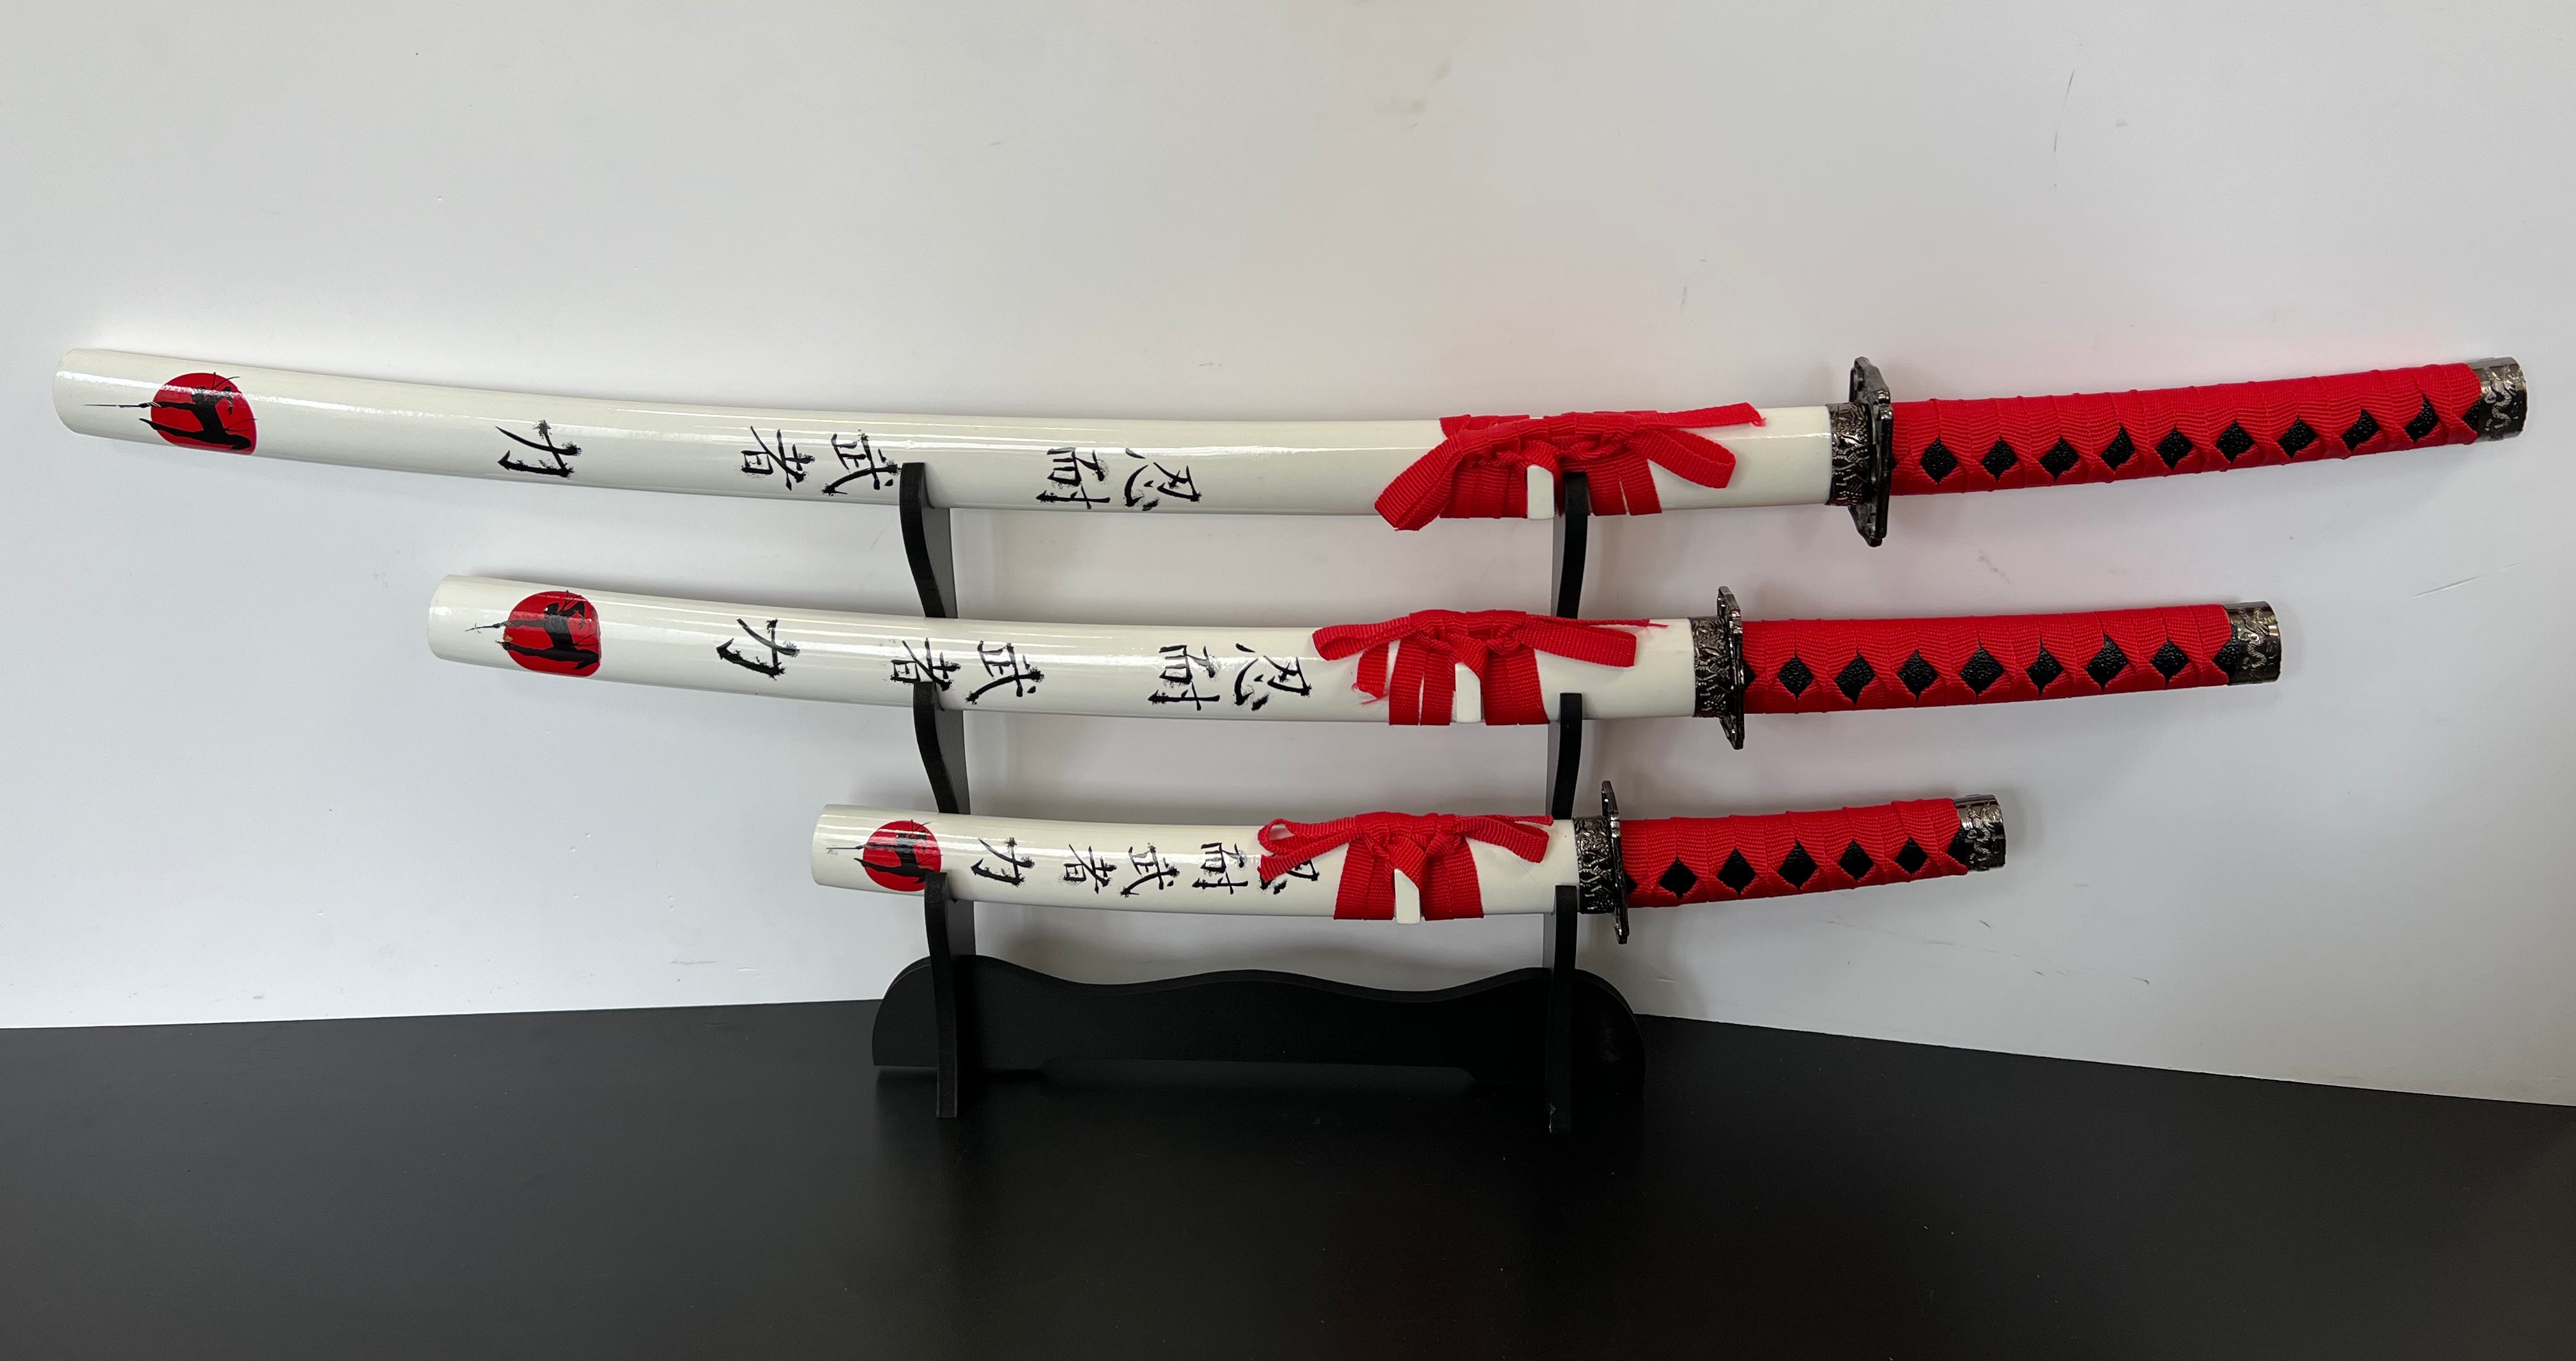 Eine 4- Teilige Samuraigarnitur, welche aus einer Katana, einem Wakizashi und einem Tanto besteht. Alle Schwerter haben das selbe Design und sind aufeinander sehr gut abgestimmt. Auf der Schwertscheide sind Japanische Schriftzüge und ein Ninja. Die Tsuba haben eine Eckige From welches bei Katanas außergewöhnlich ist, dennoch sehr gut aussieht. Außerdem befindet sich eine Schwerthalterung im Lieferumfang, welche platz für alle 3 Schwerter bietet.